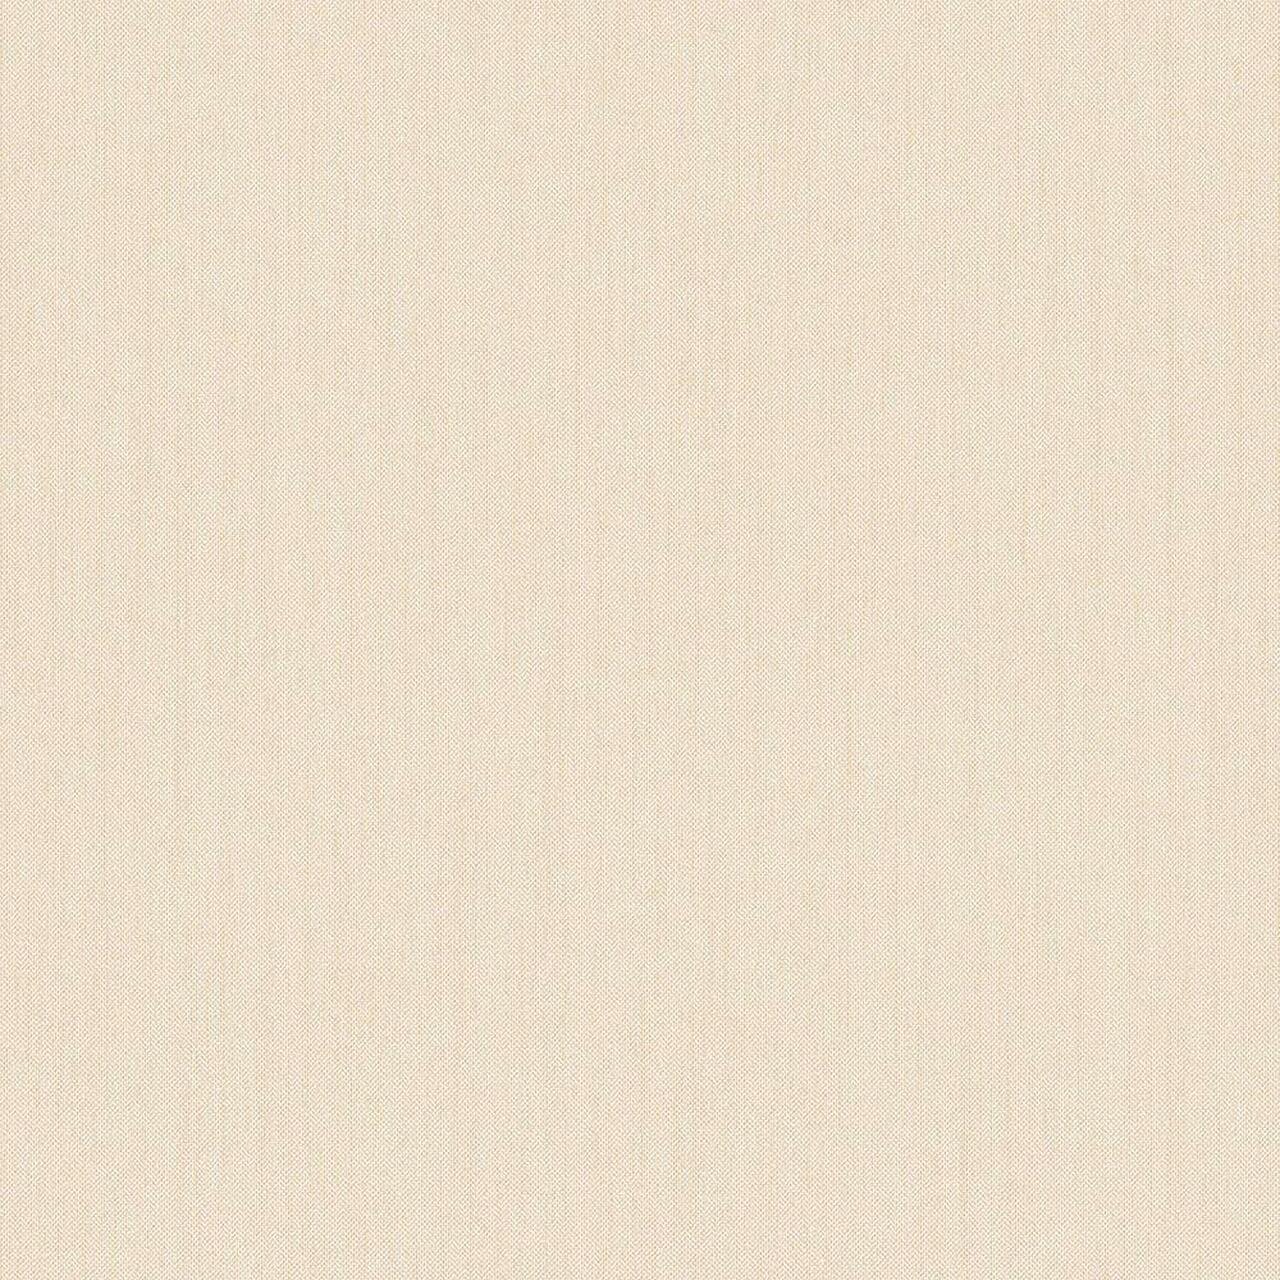 Galerie Organic Textures Tweed Wallpaper G67982 Light Beige